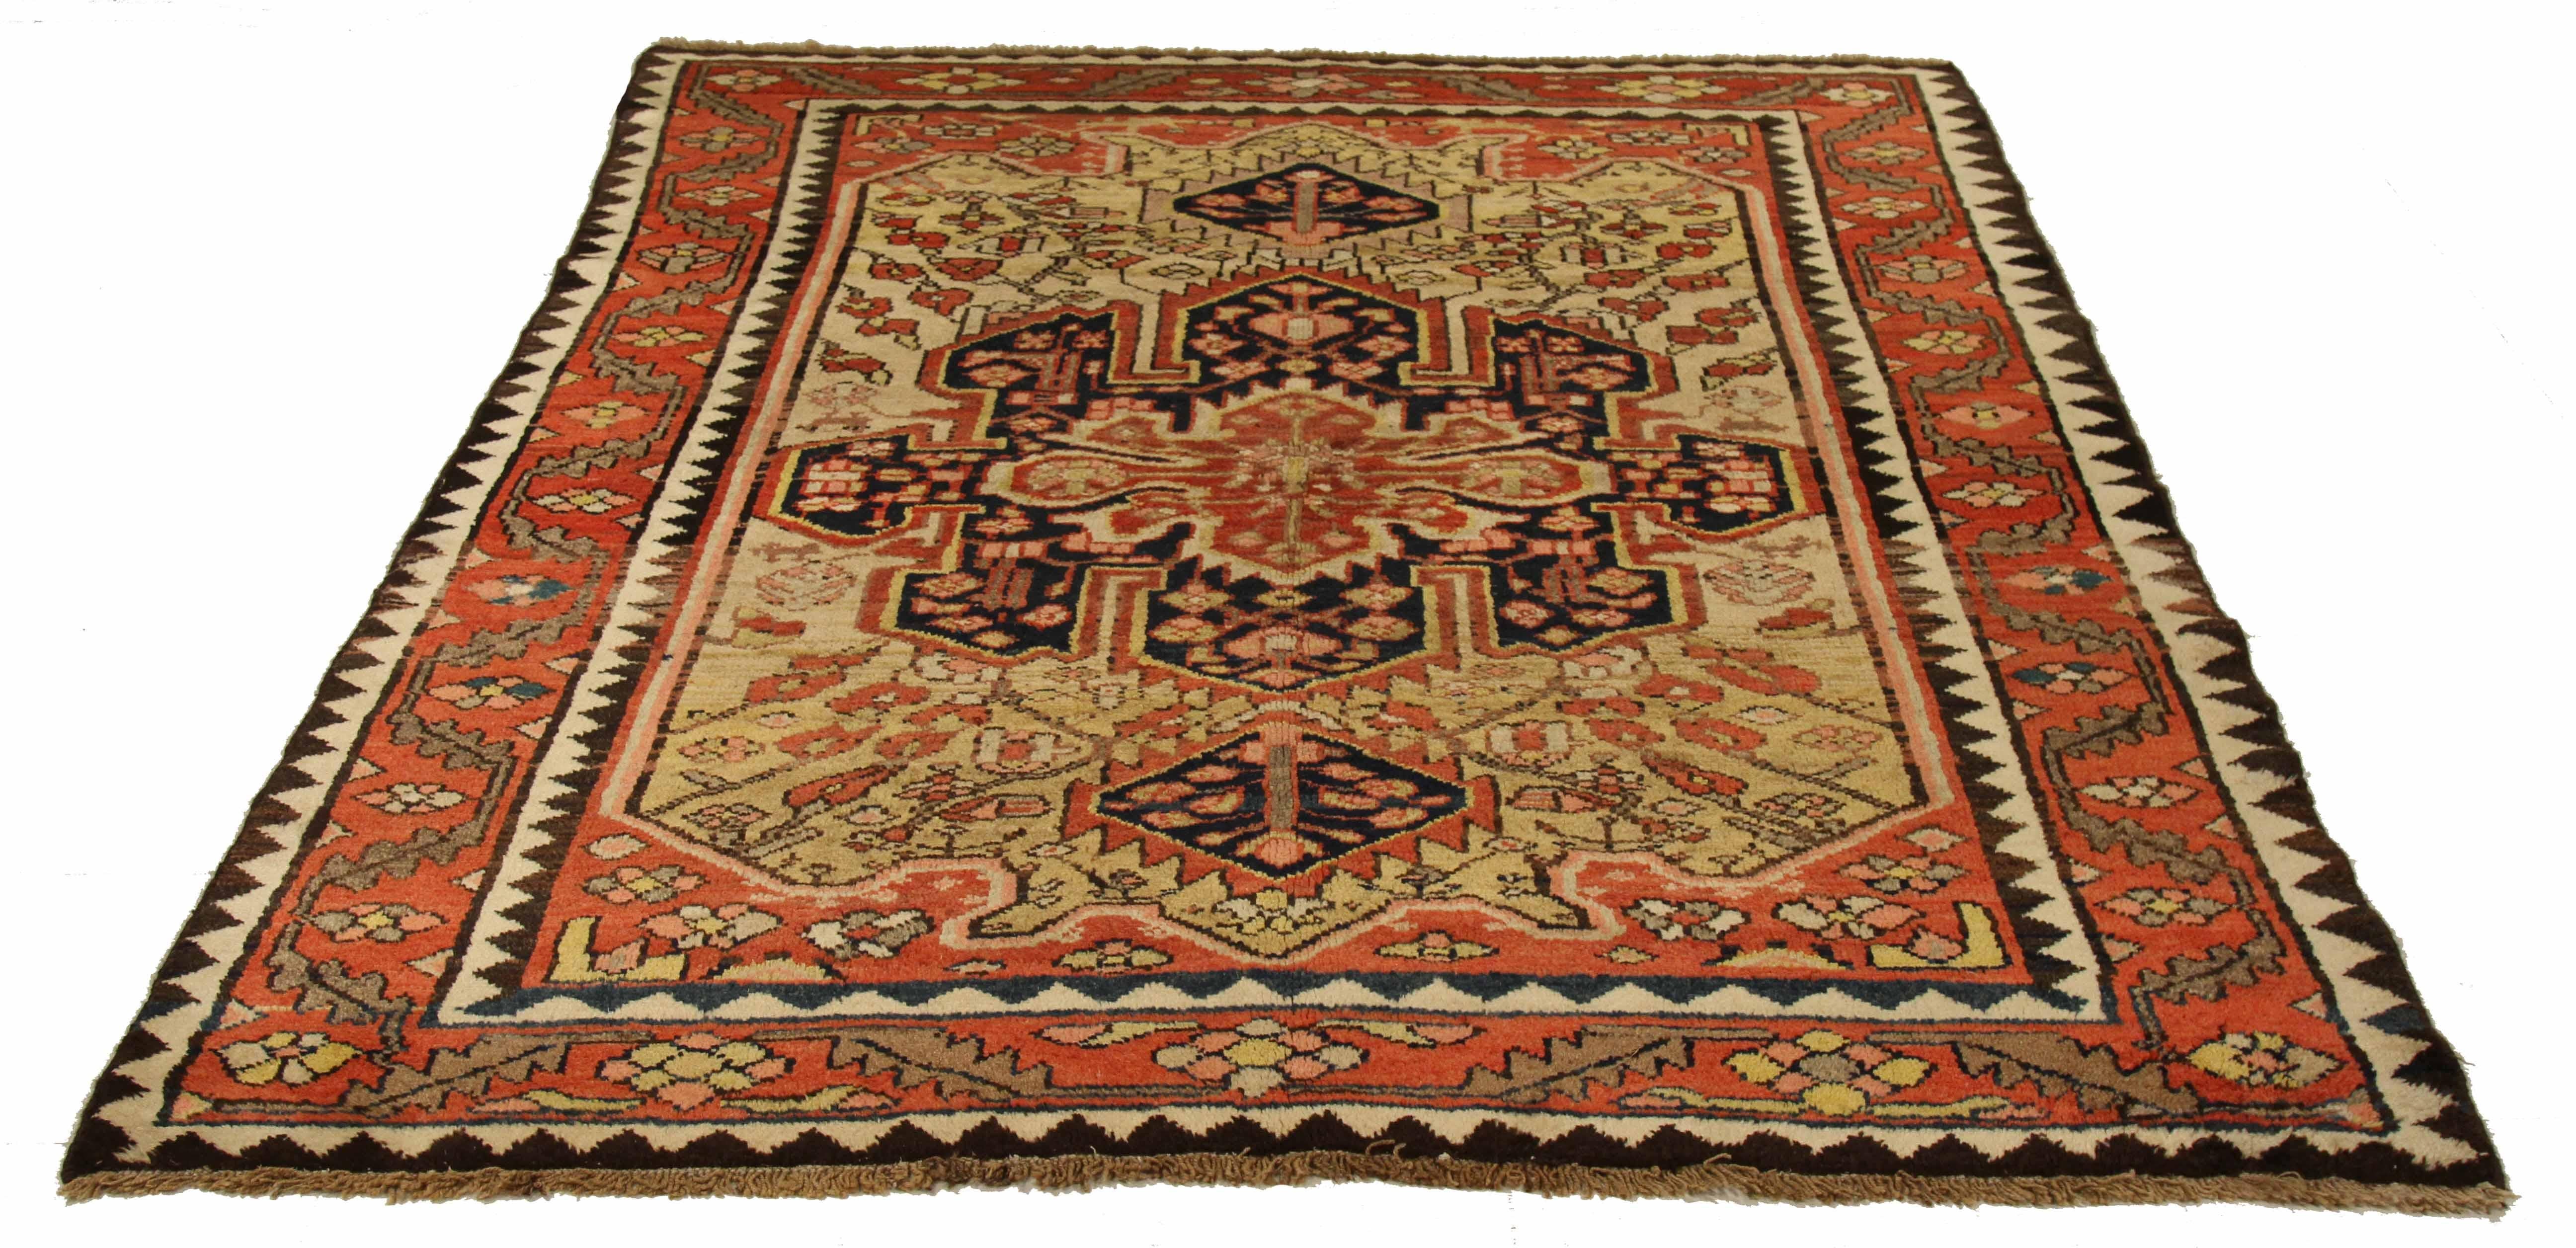 Ancien tapis persan Hamedan fabriqué à la main avec de la laine de mouton de première qualité. Il est teint de manière experte avec des colorants végétaux entièrement naturels qui sont sans danger pour les humains et les animaux de compagnie. Ce